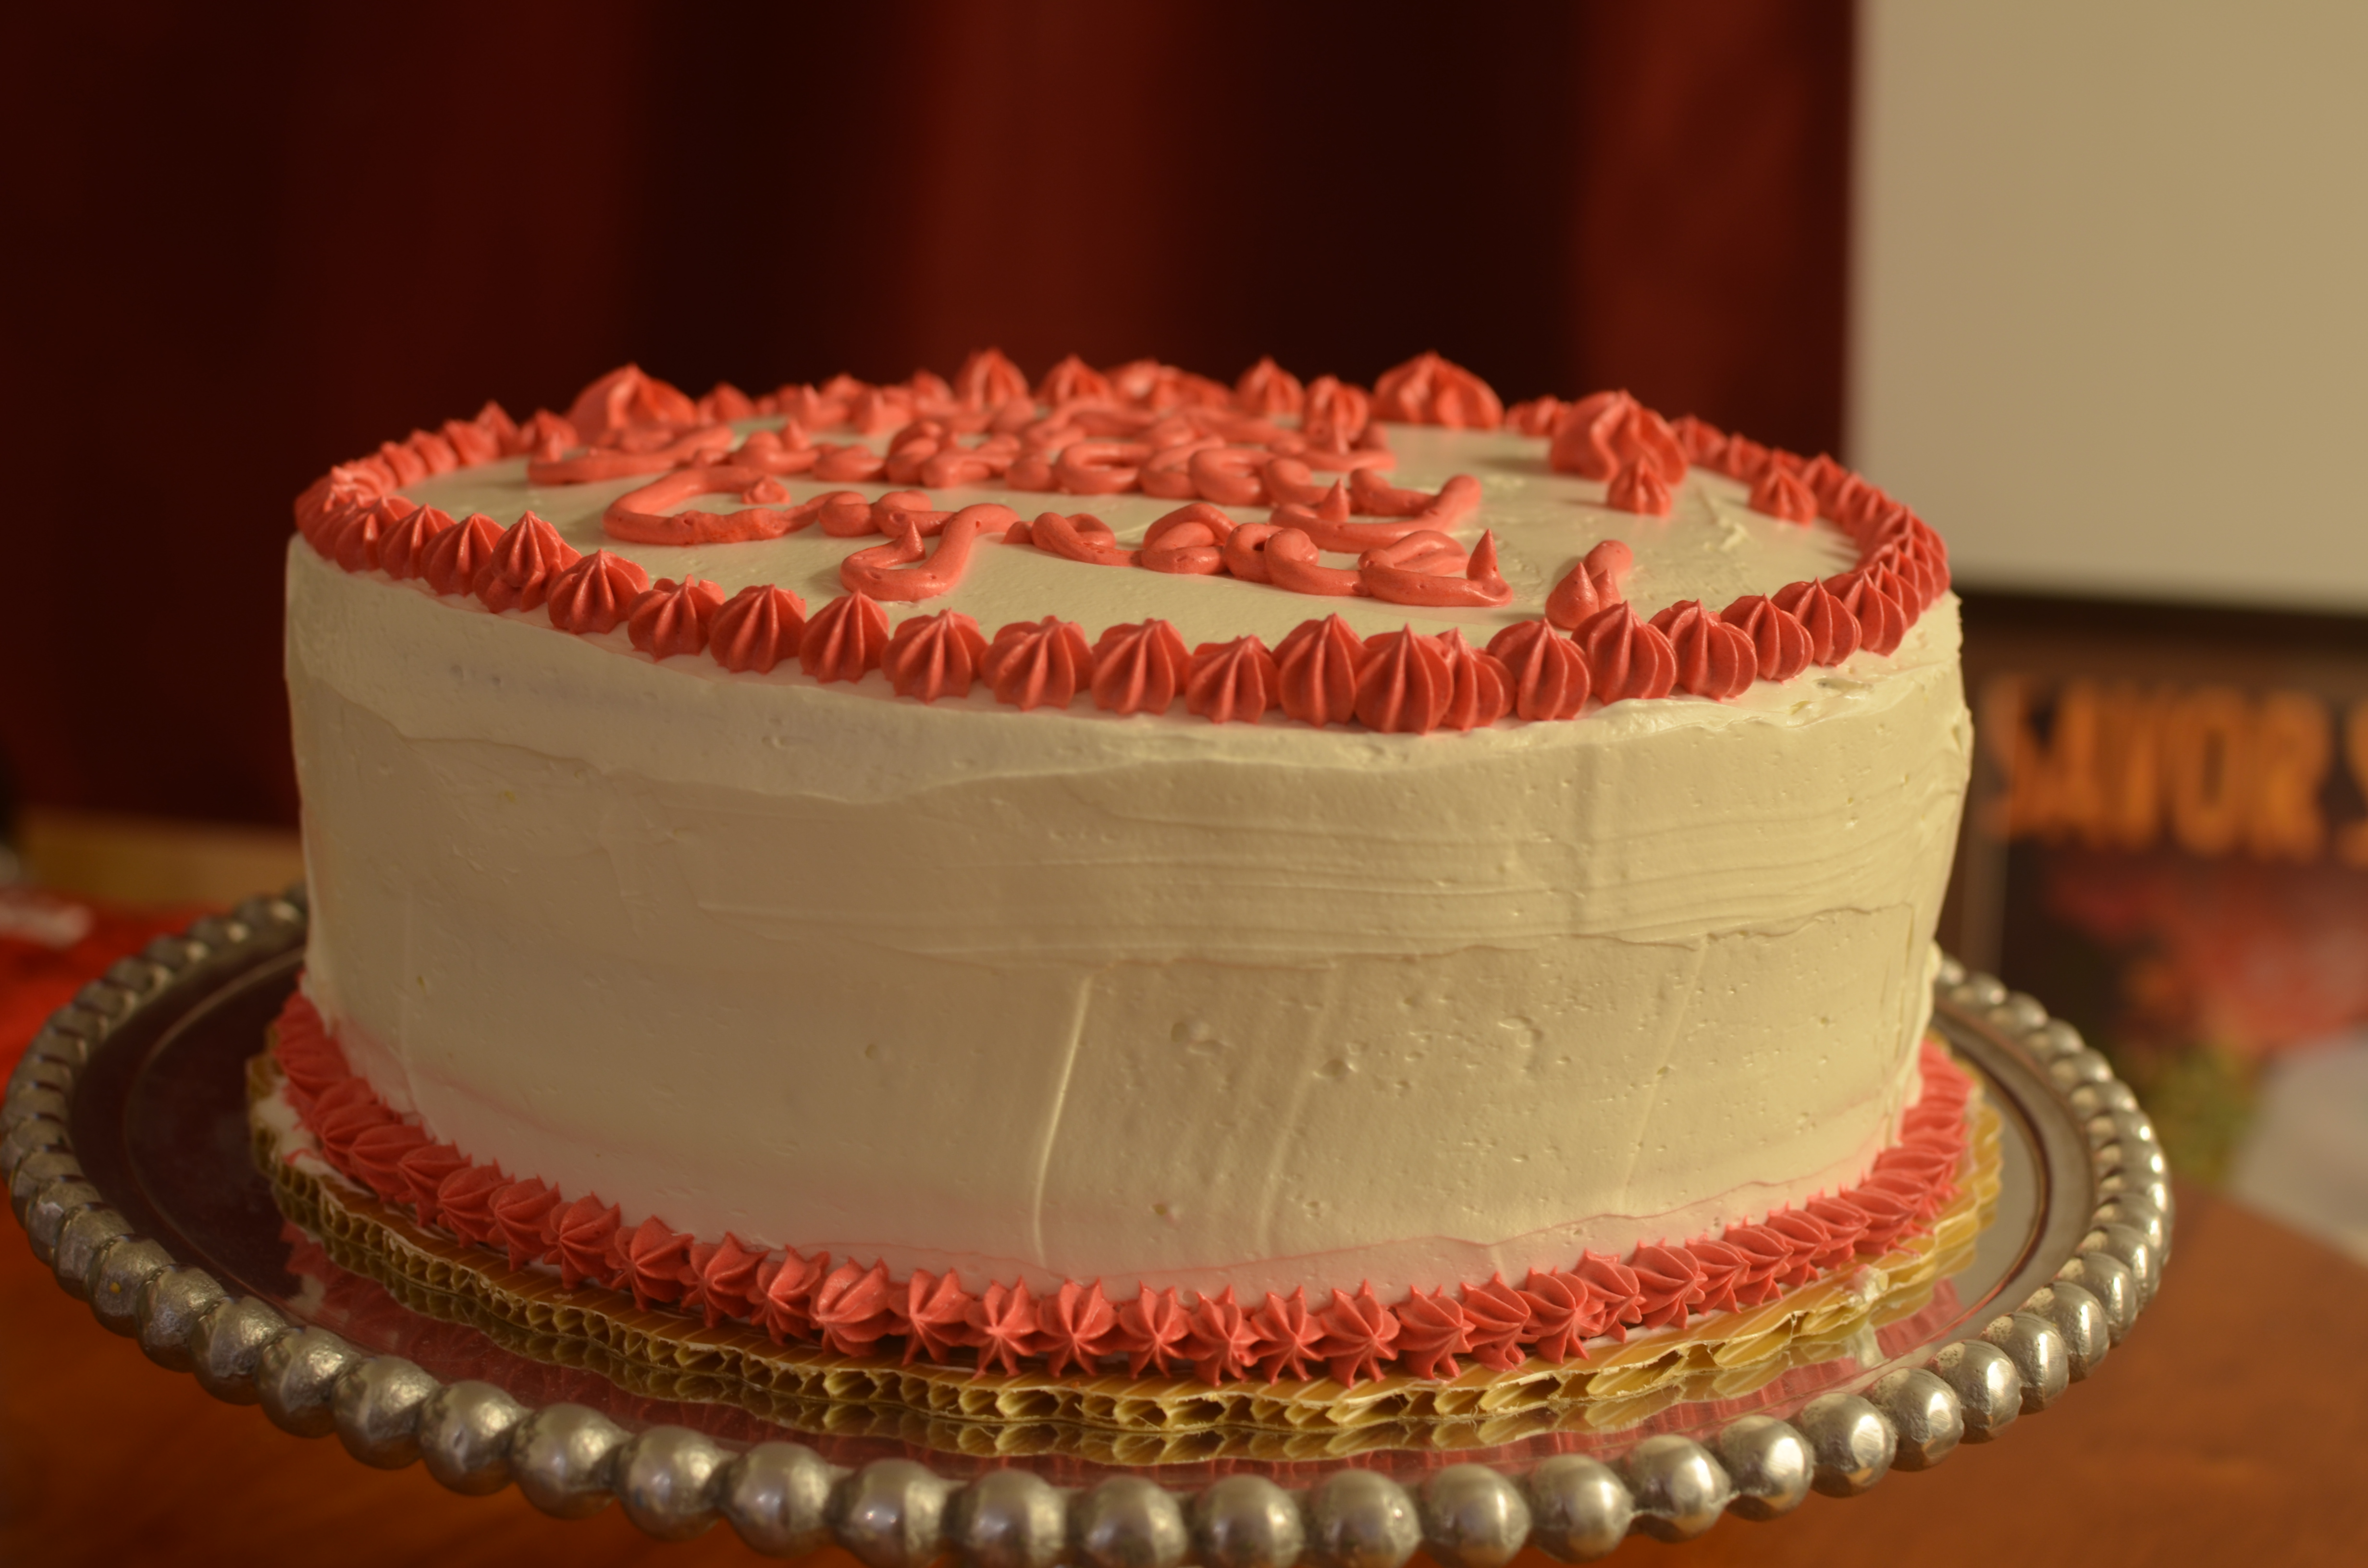 Birthday cake, perfect birthday cake, best birthday cake